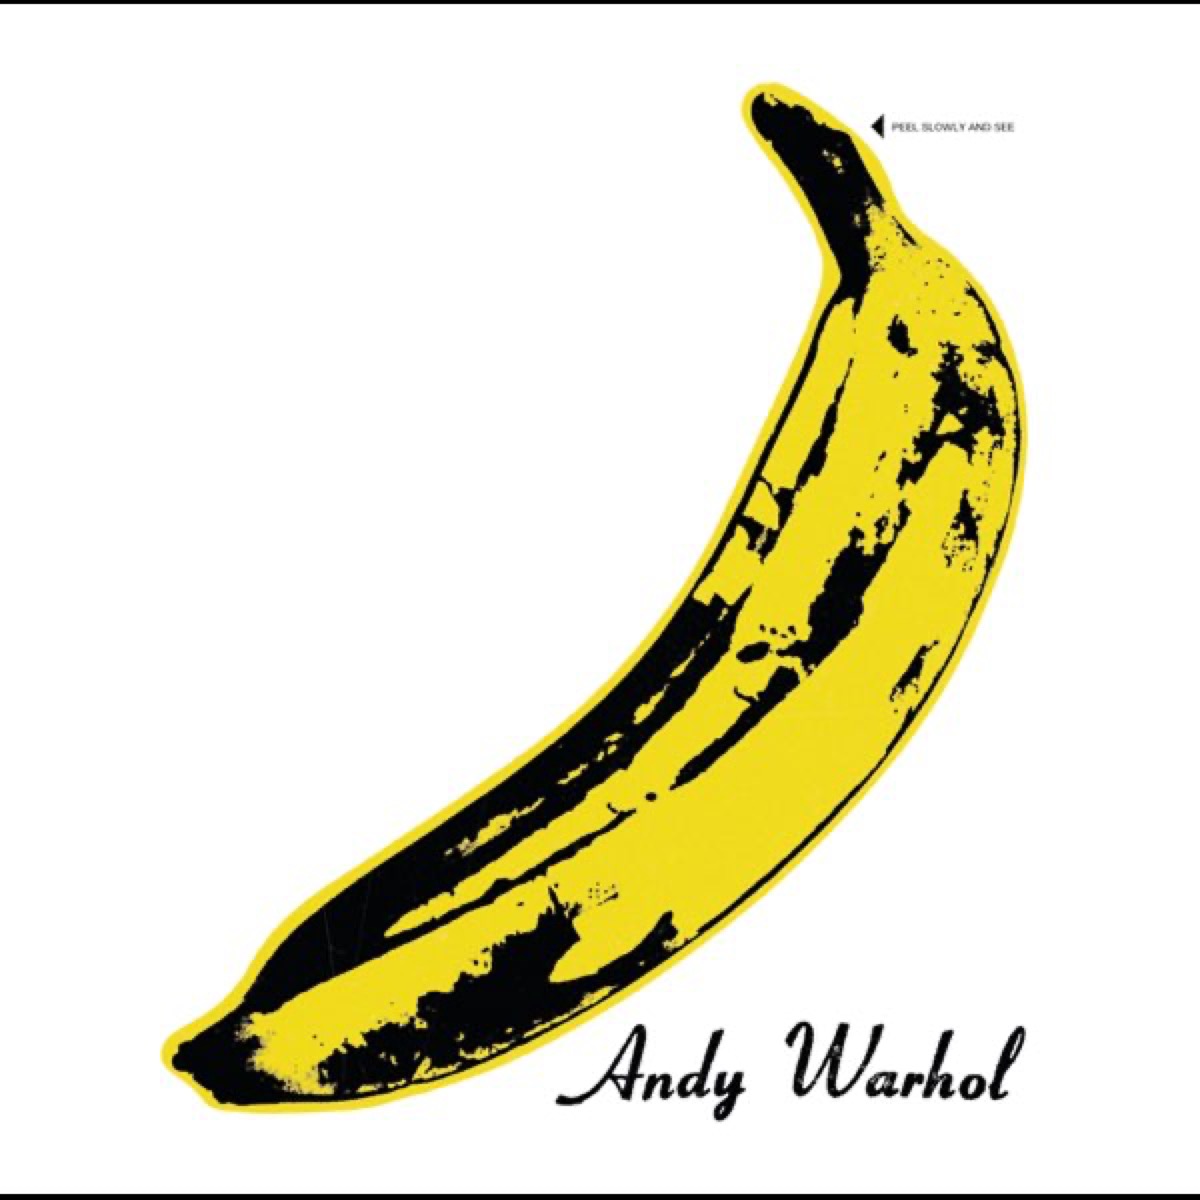 "The Velvet Underground and Nico" by The Velvet Underground and Nico album cover